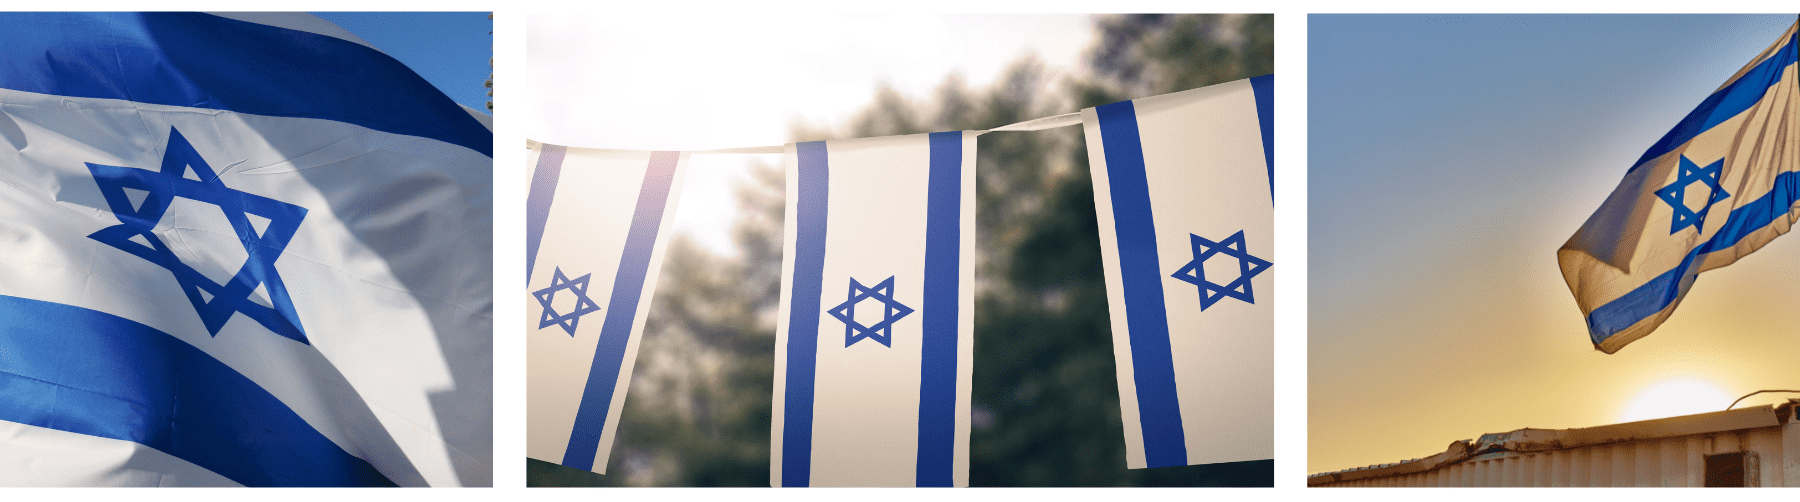 אוסף של שלוש תמונות של דגל ישראל, שרשרת דגלים ותמונה נוספת של הדגל בקלוז אפ